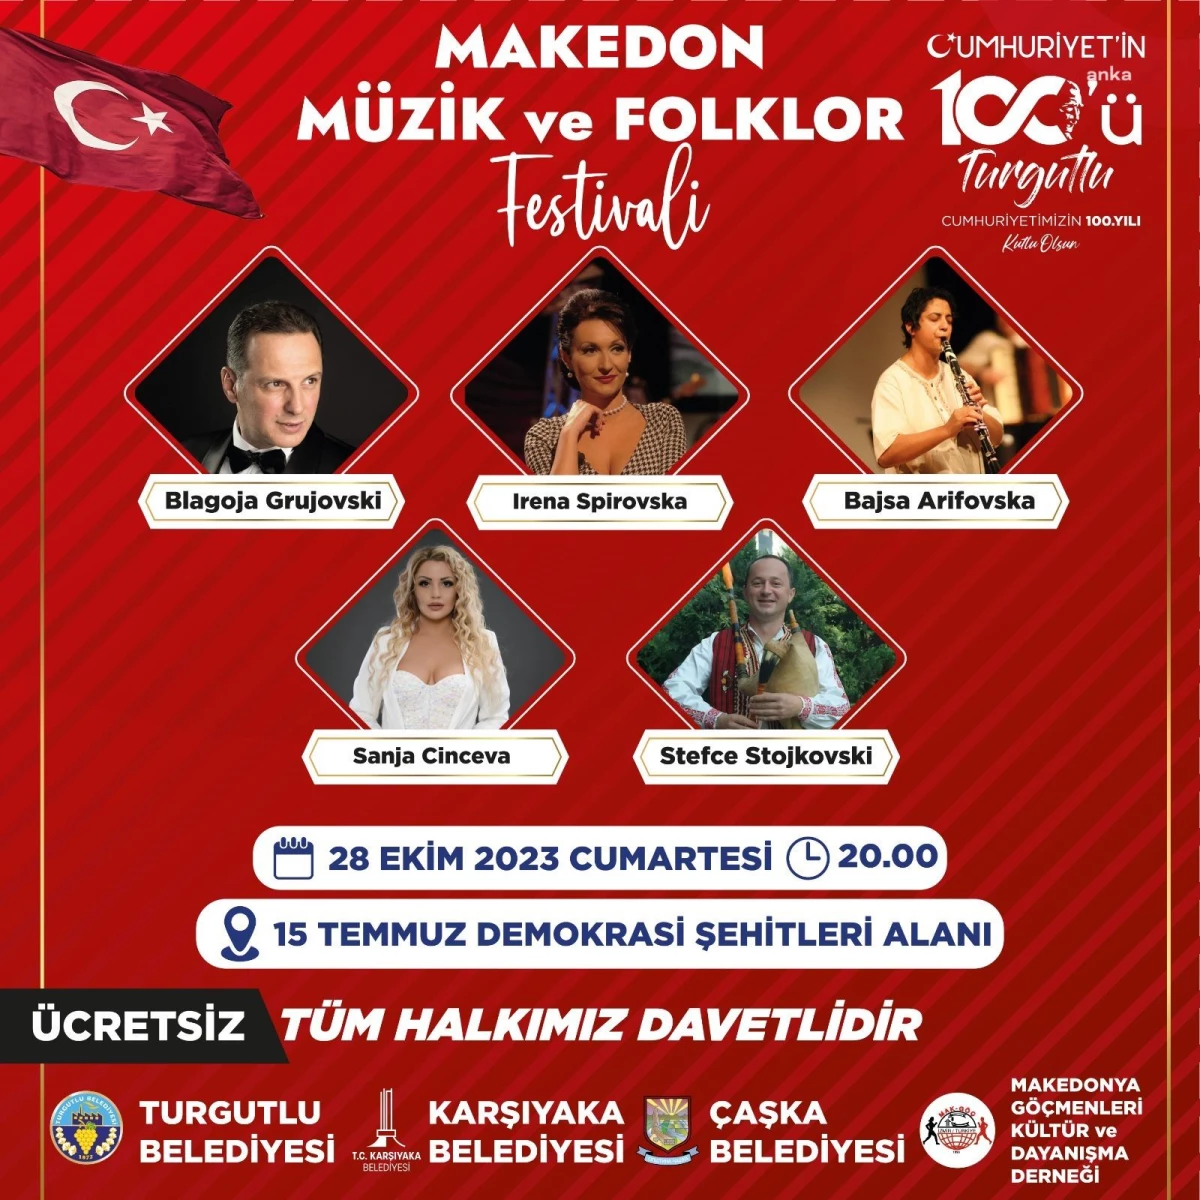 Turgutlu Belediyesi Makedon Kültürüne Ev Sahipliği Yapacak